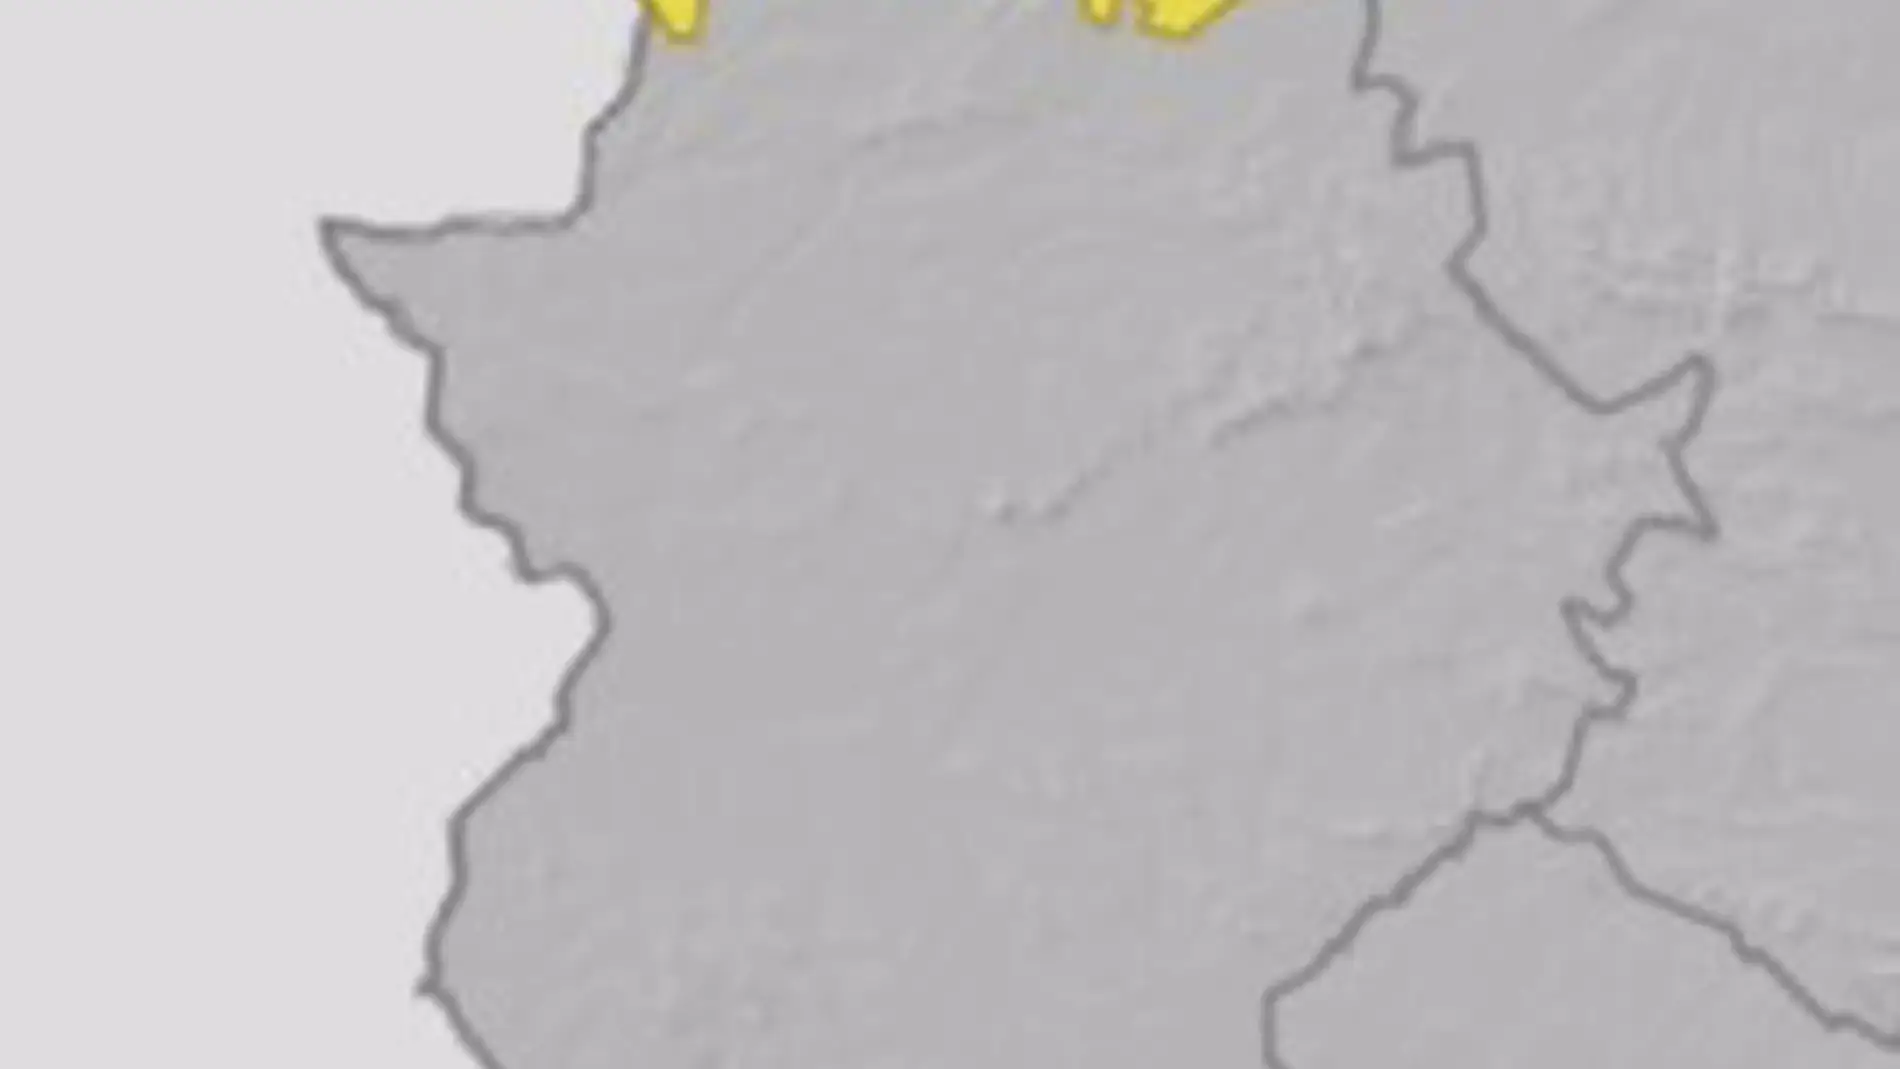 Continúa activa este miércoles la alerta amarilla por lluvias y viento en el norte de la provincia de Cáceres